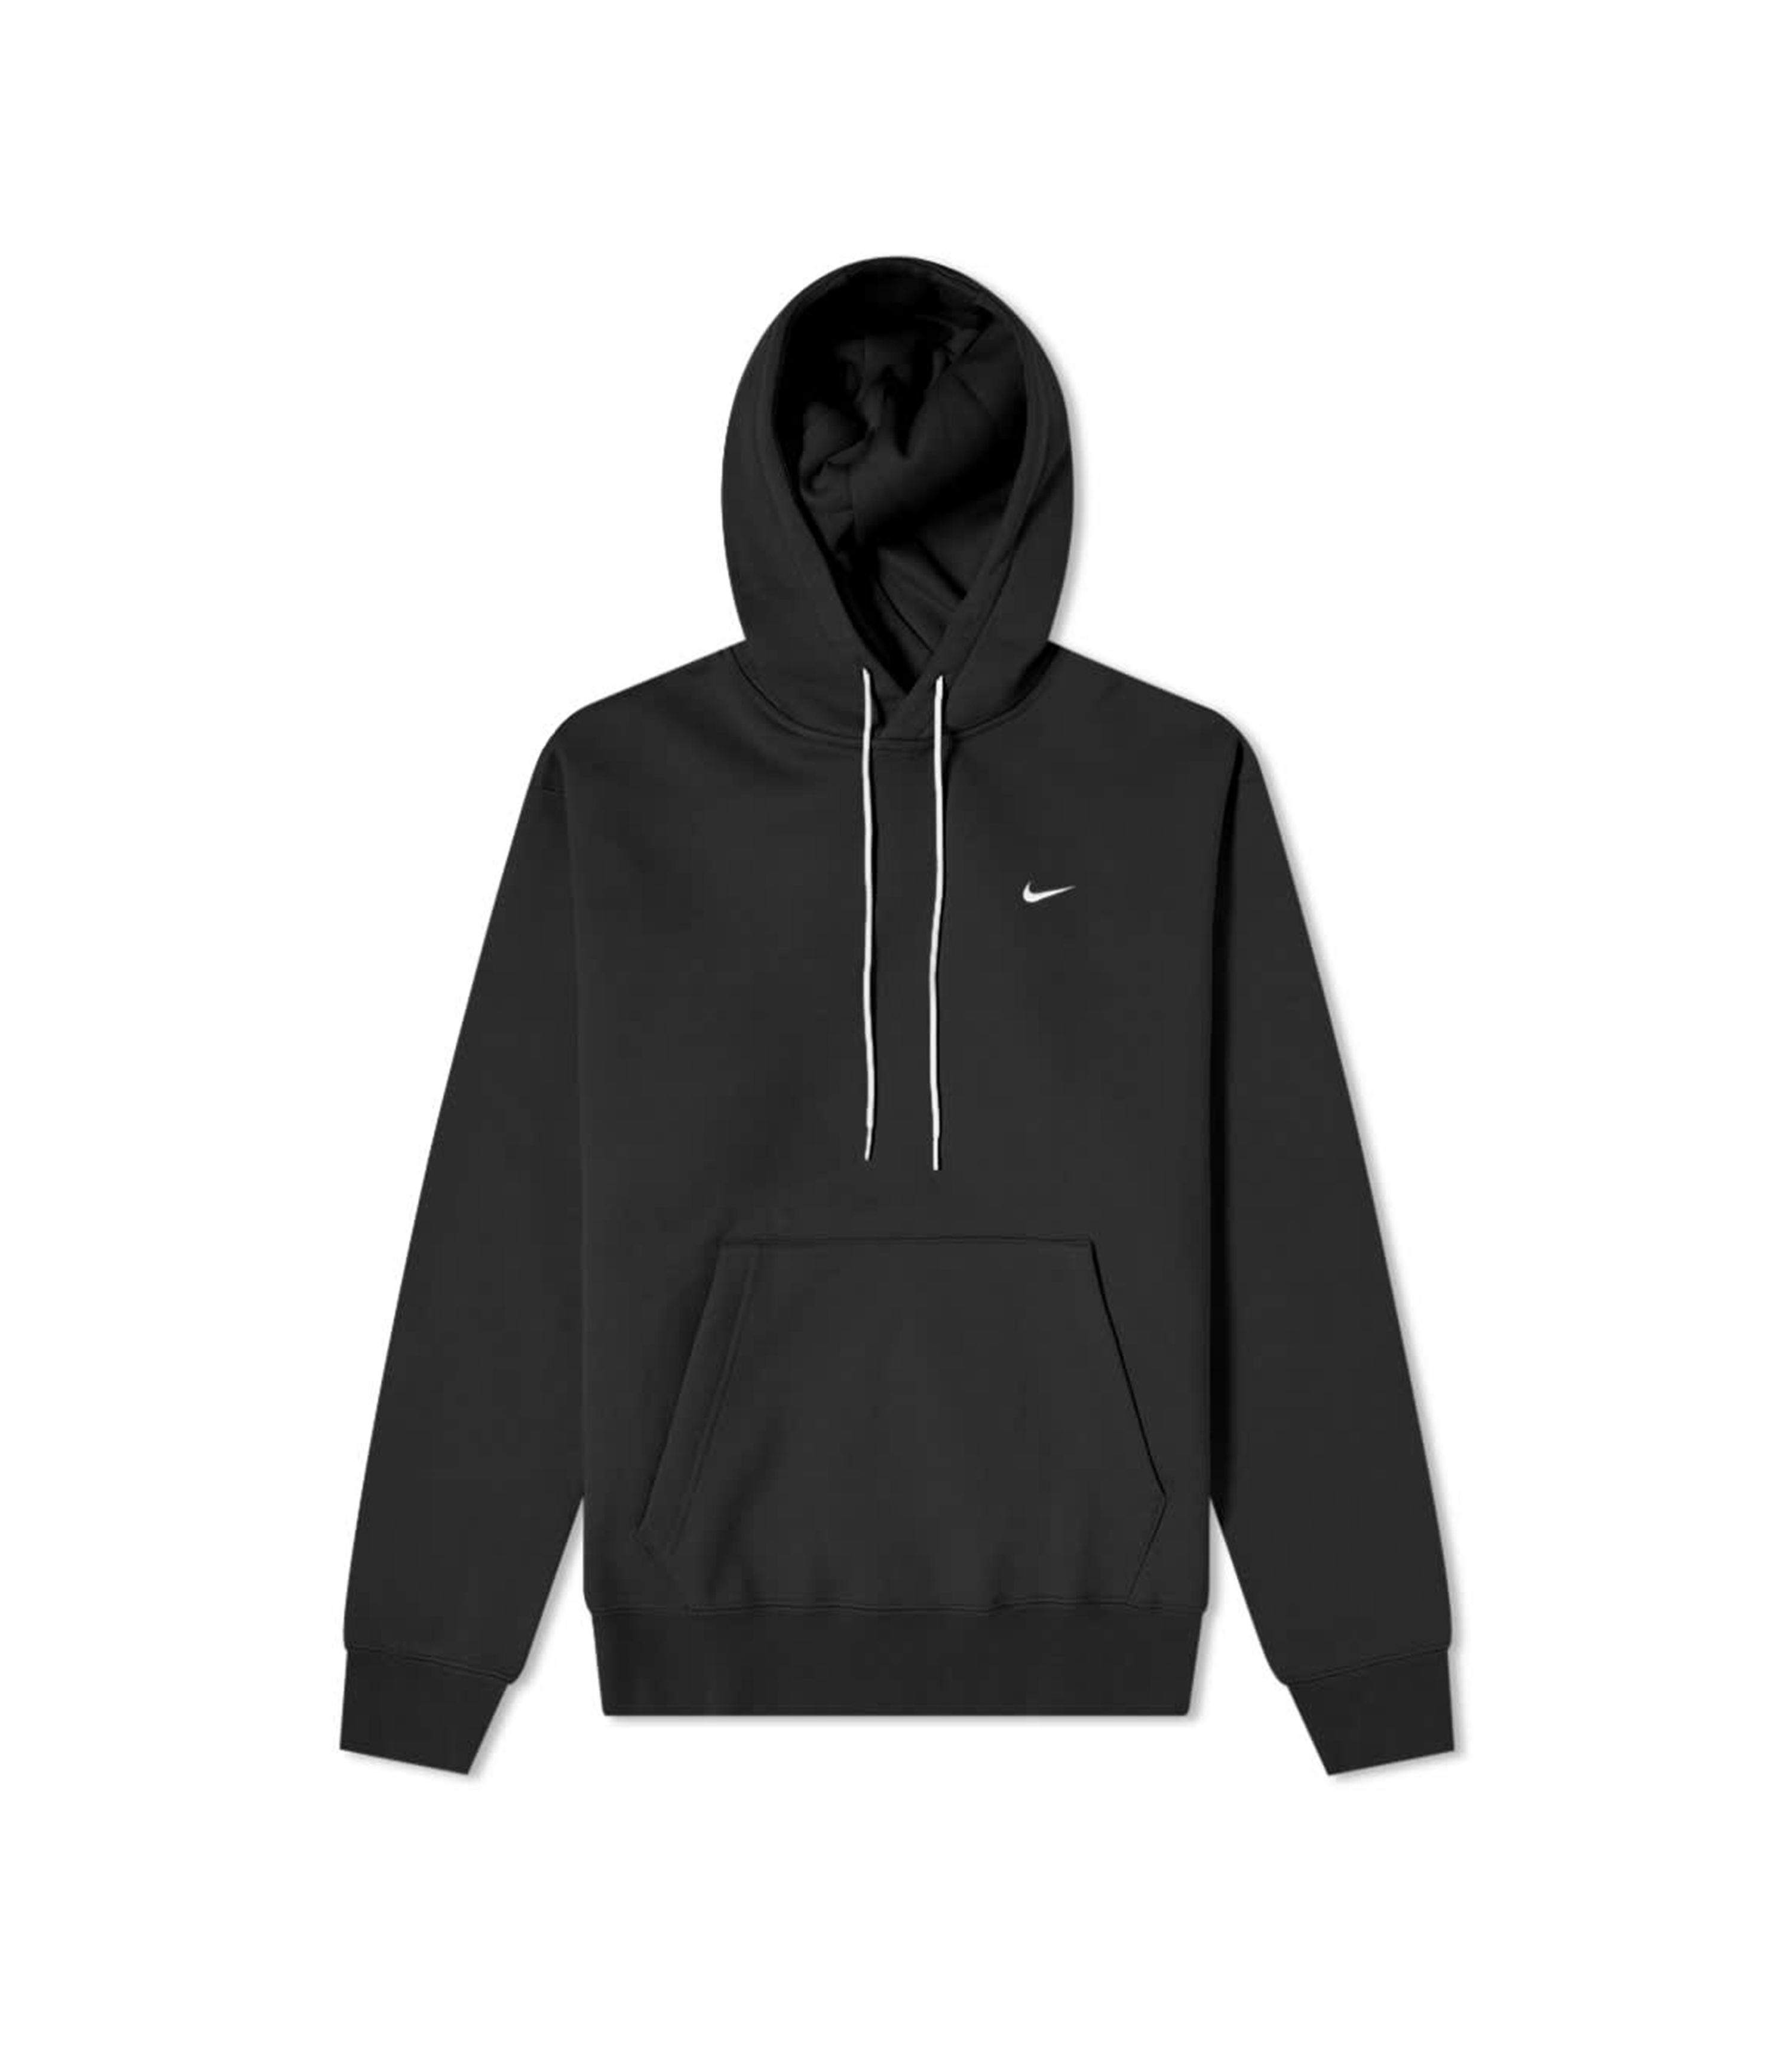 NRG Hooded Sweatshirt - Black